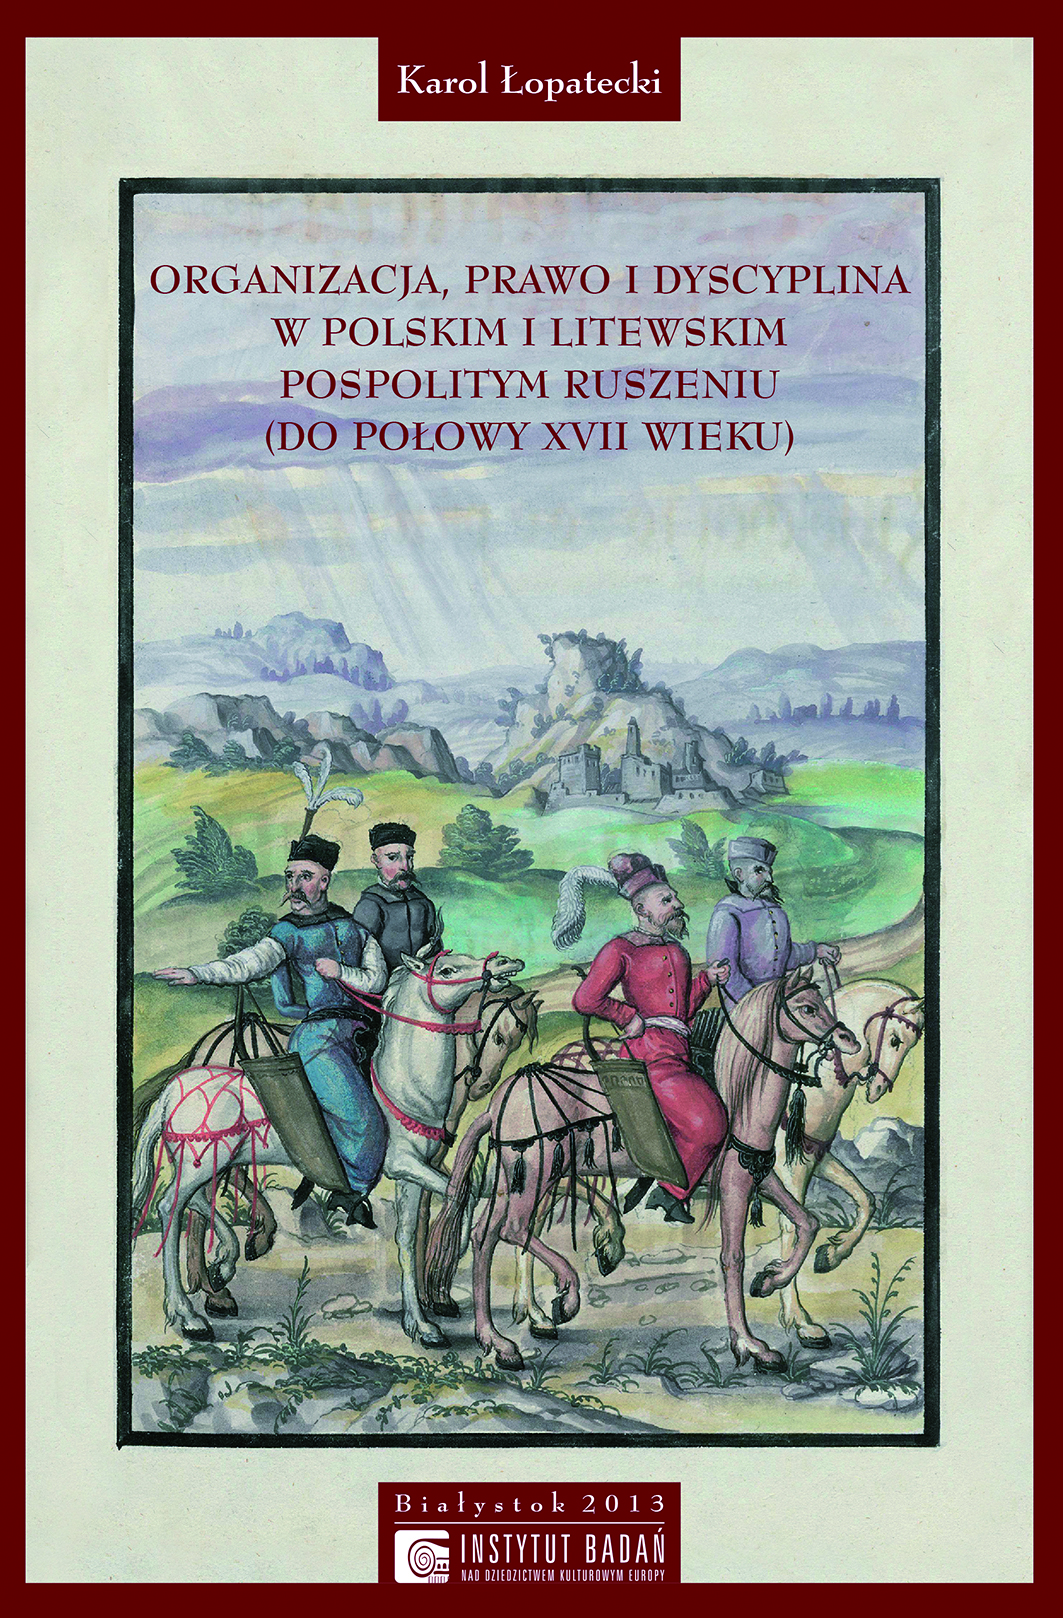 Organizacja, prawo i dyscyplina w polskim i litewskim pospolitym ruszeniu (do połowy XVII wieku)